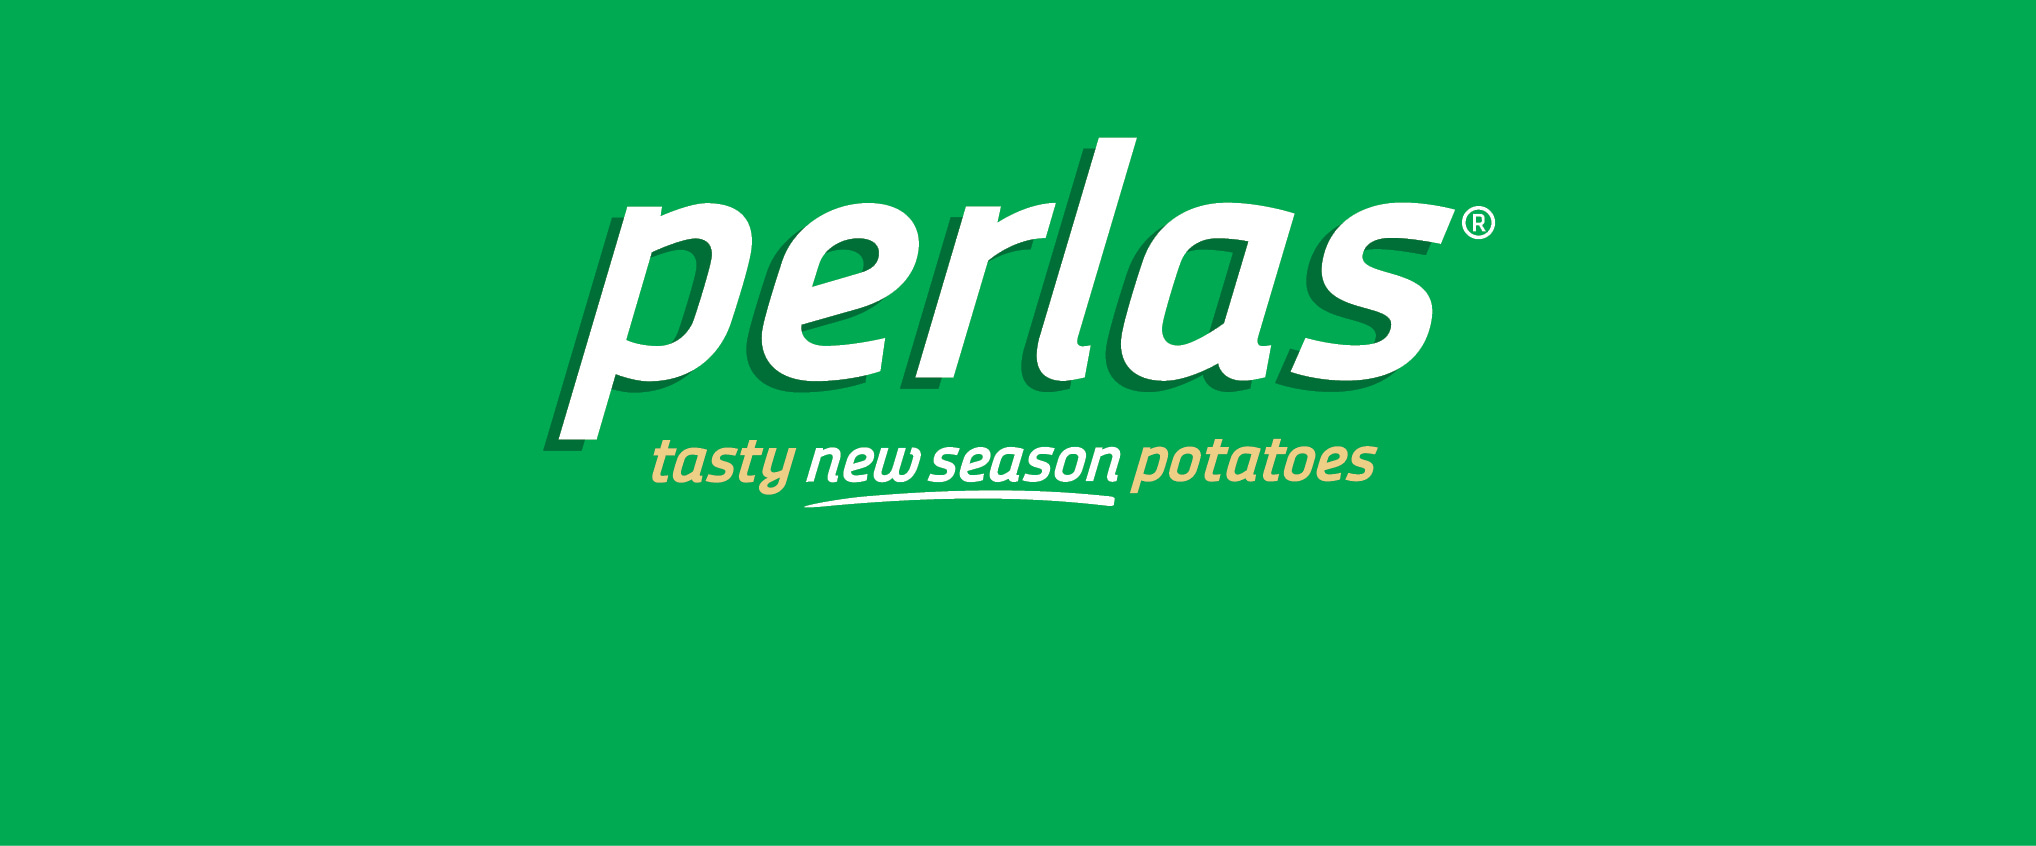 Fresh new season potatoes